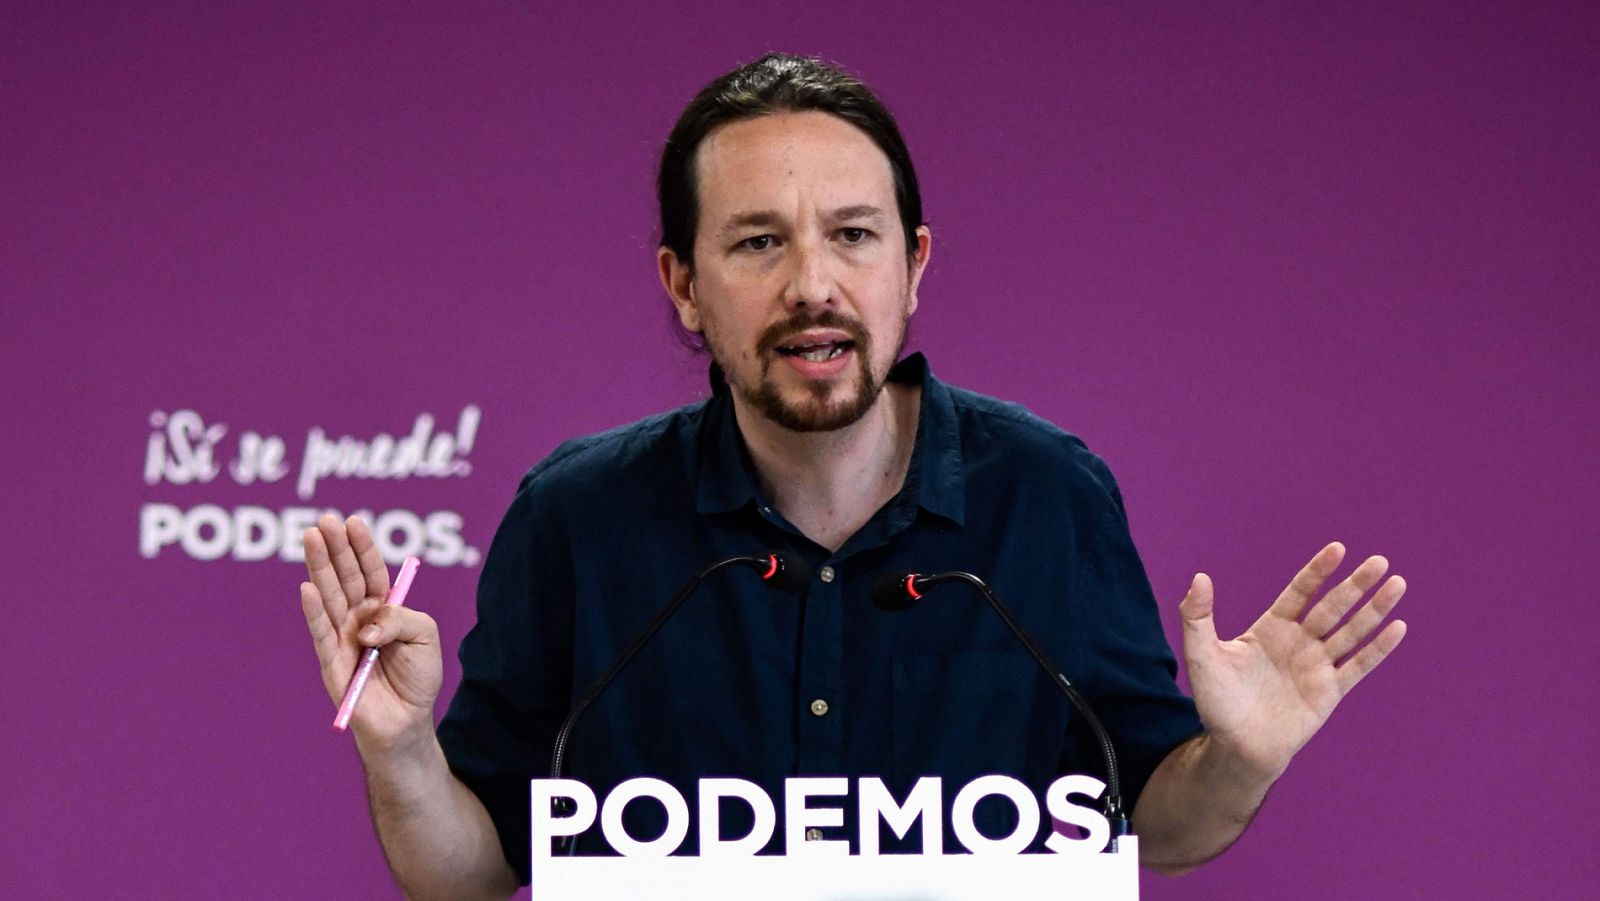 Elecciones municipales y autonómicas: Iglesias hace autocrítica pero mantiene su intención de entrar en el gobierno de Sánchez